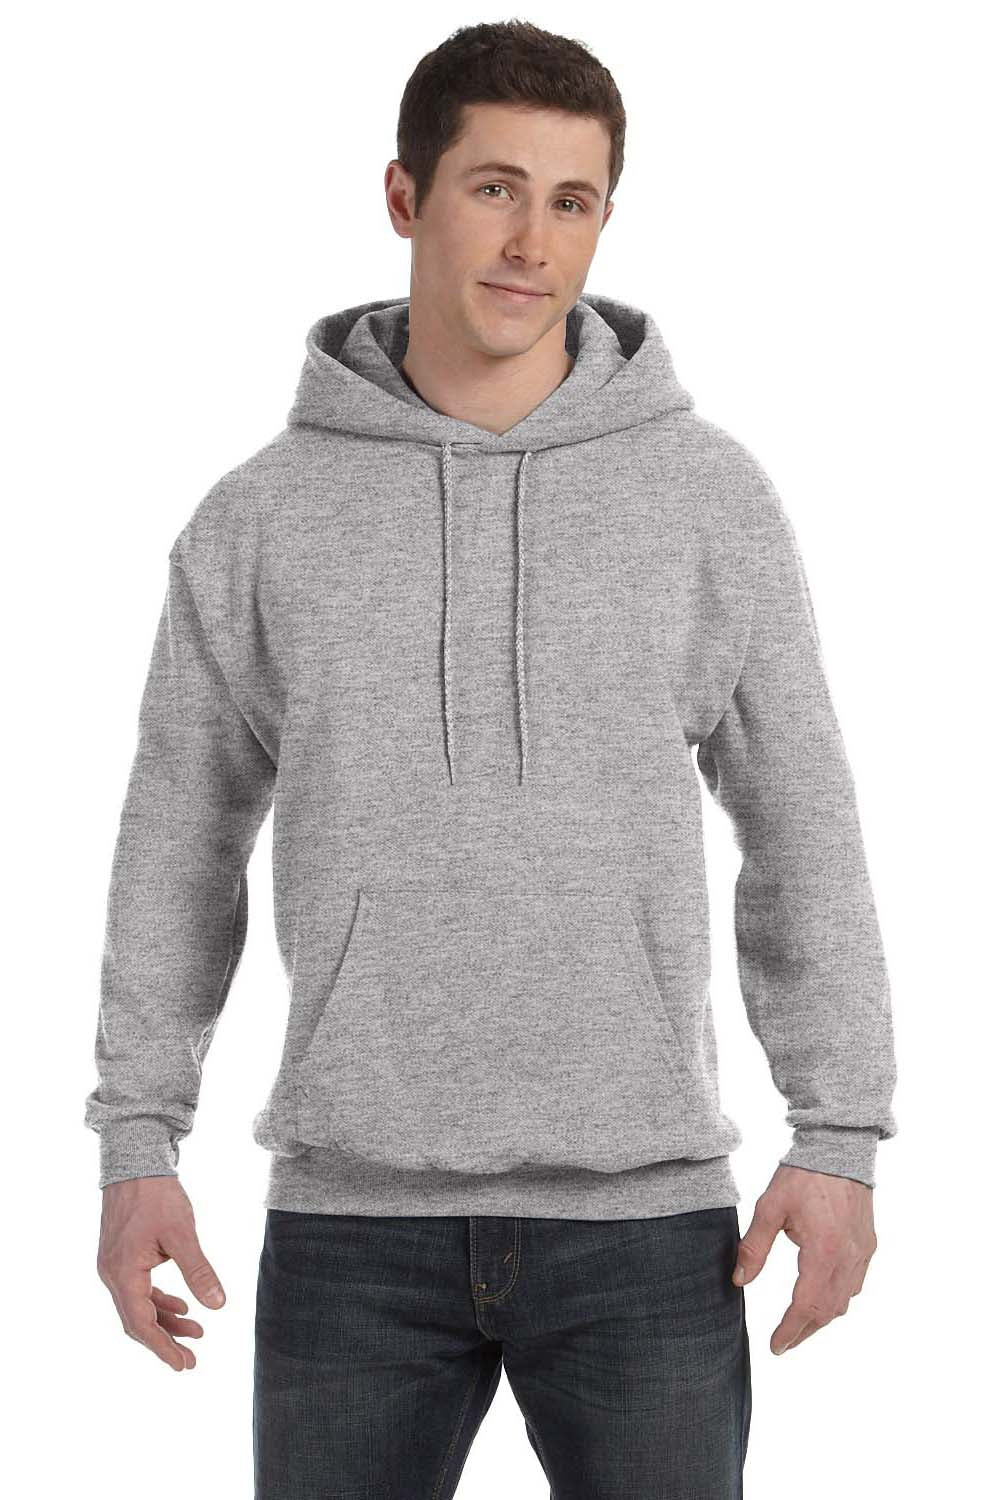 Hanes P170 Mens EcoSmart Print Pro XP Hooded Sweatshirt Hoodie Light Steel Grey Front